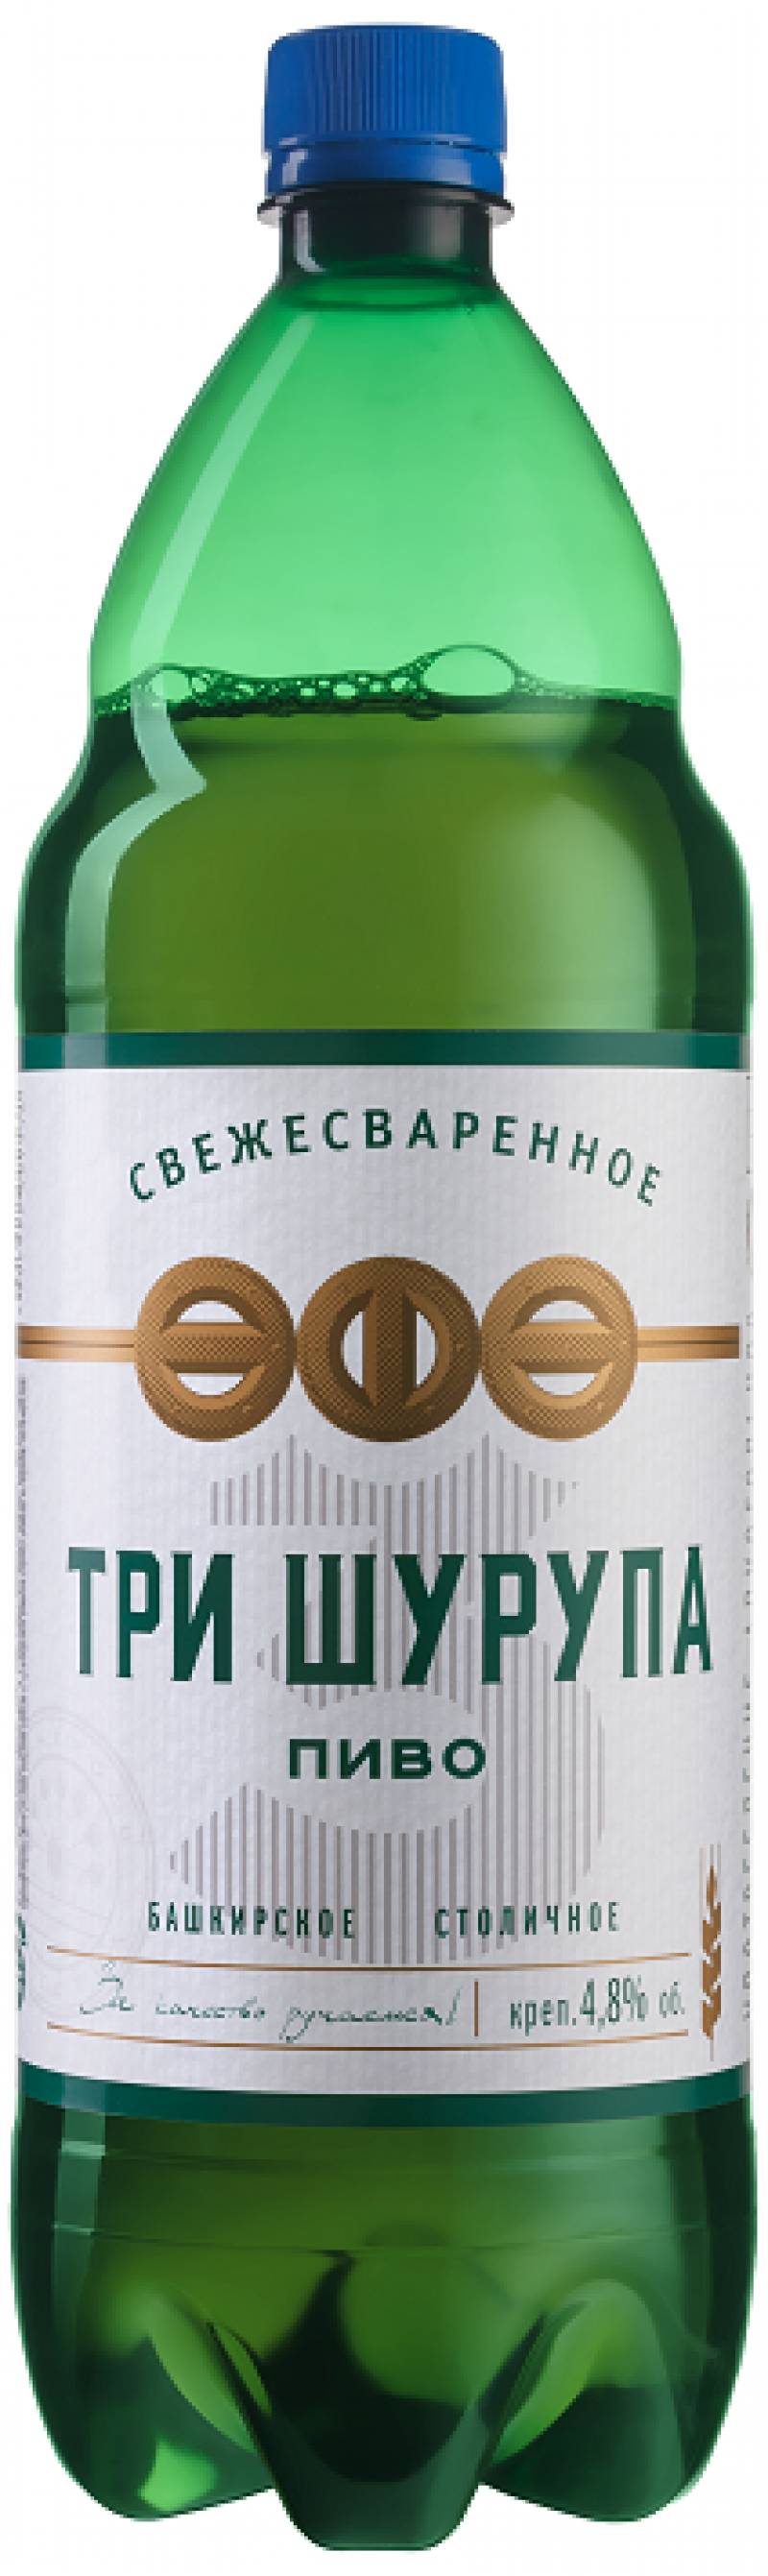 Пиво Три Шурупа  1,42 л. (Россия)